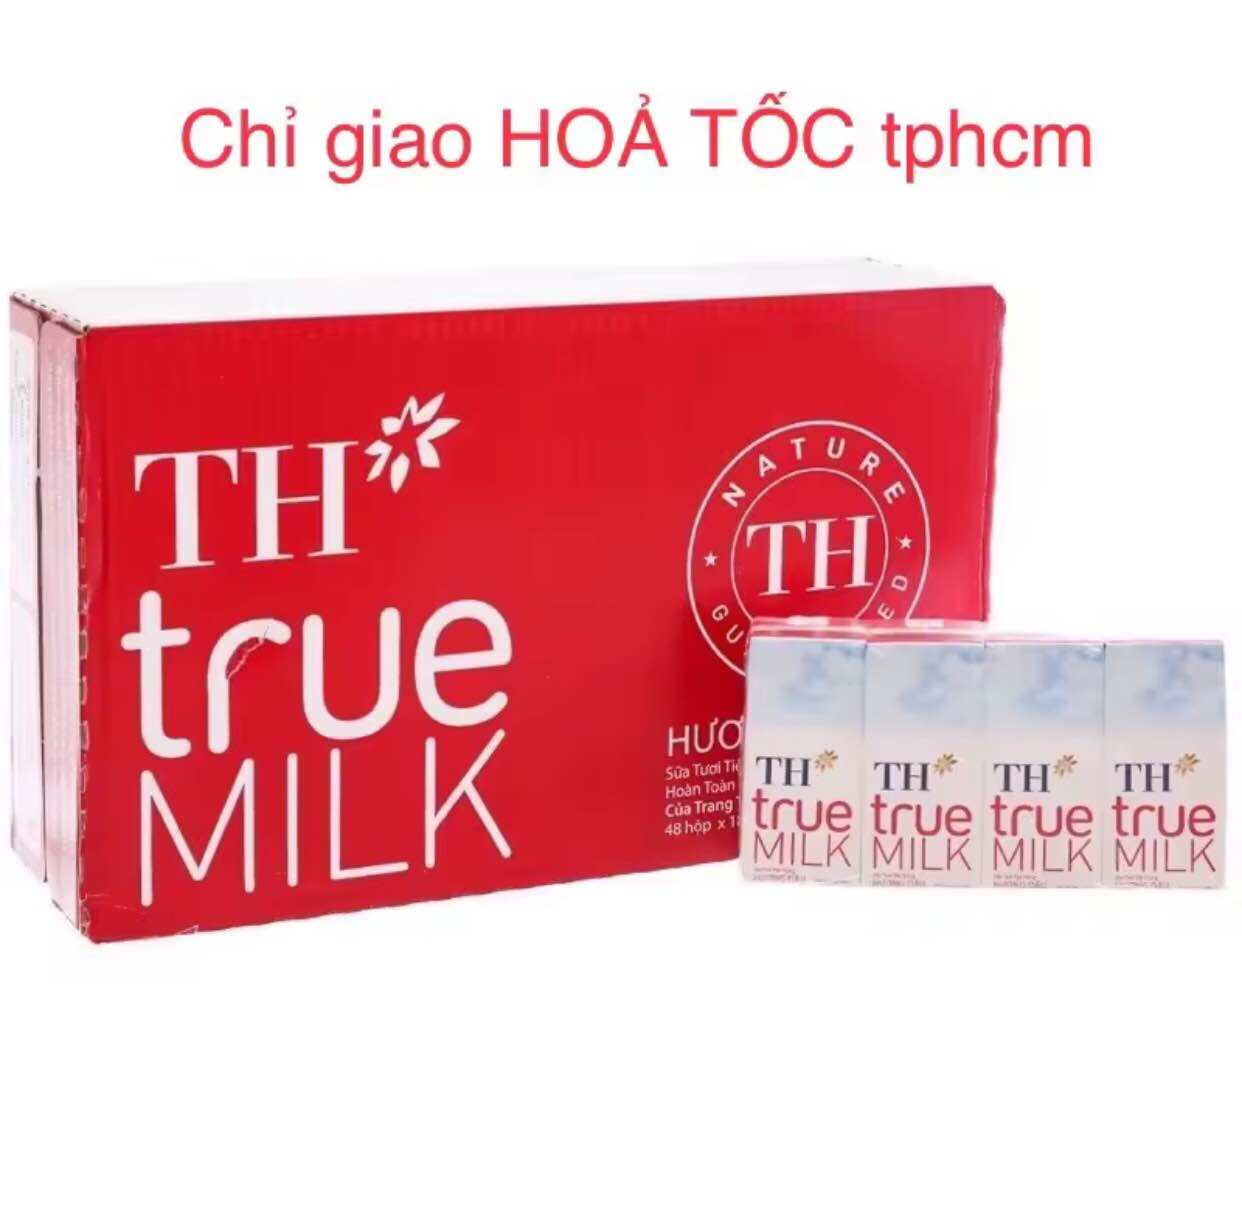 Thùng 48 hộp sữa TH TRUE MILK vị dâu 180ml CHỈ GIAO HOẢ TỐC